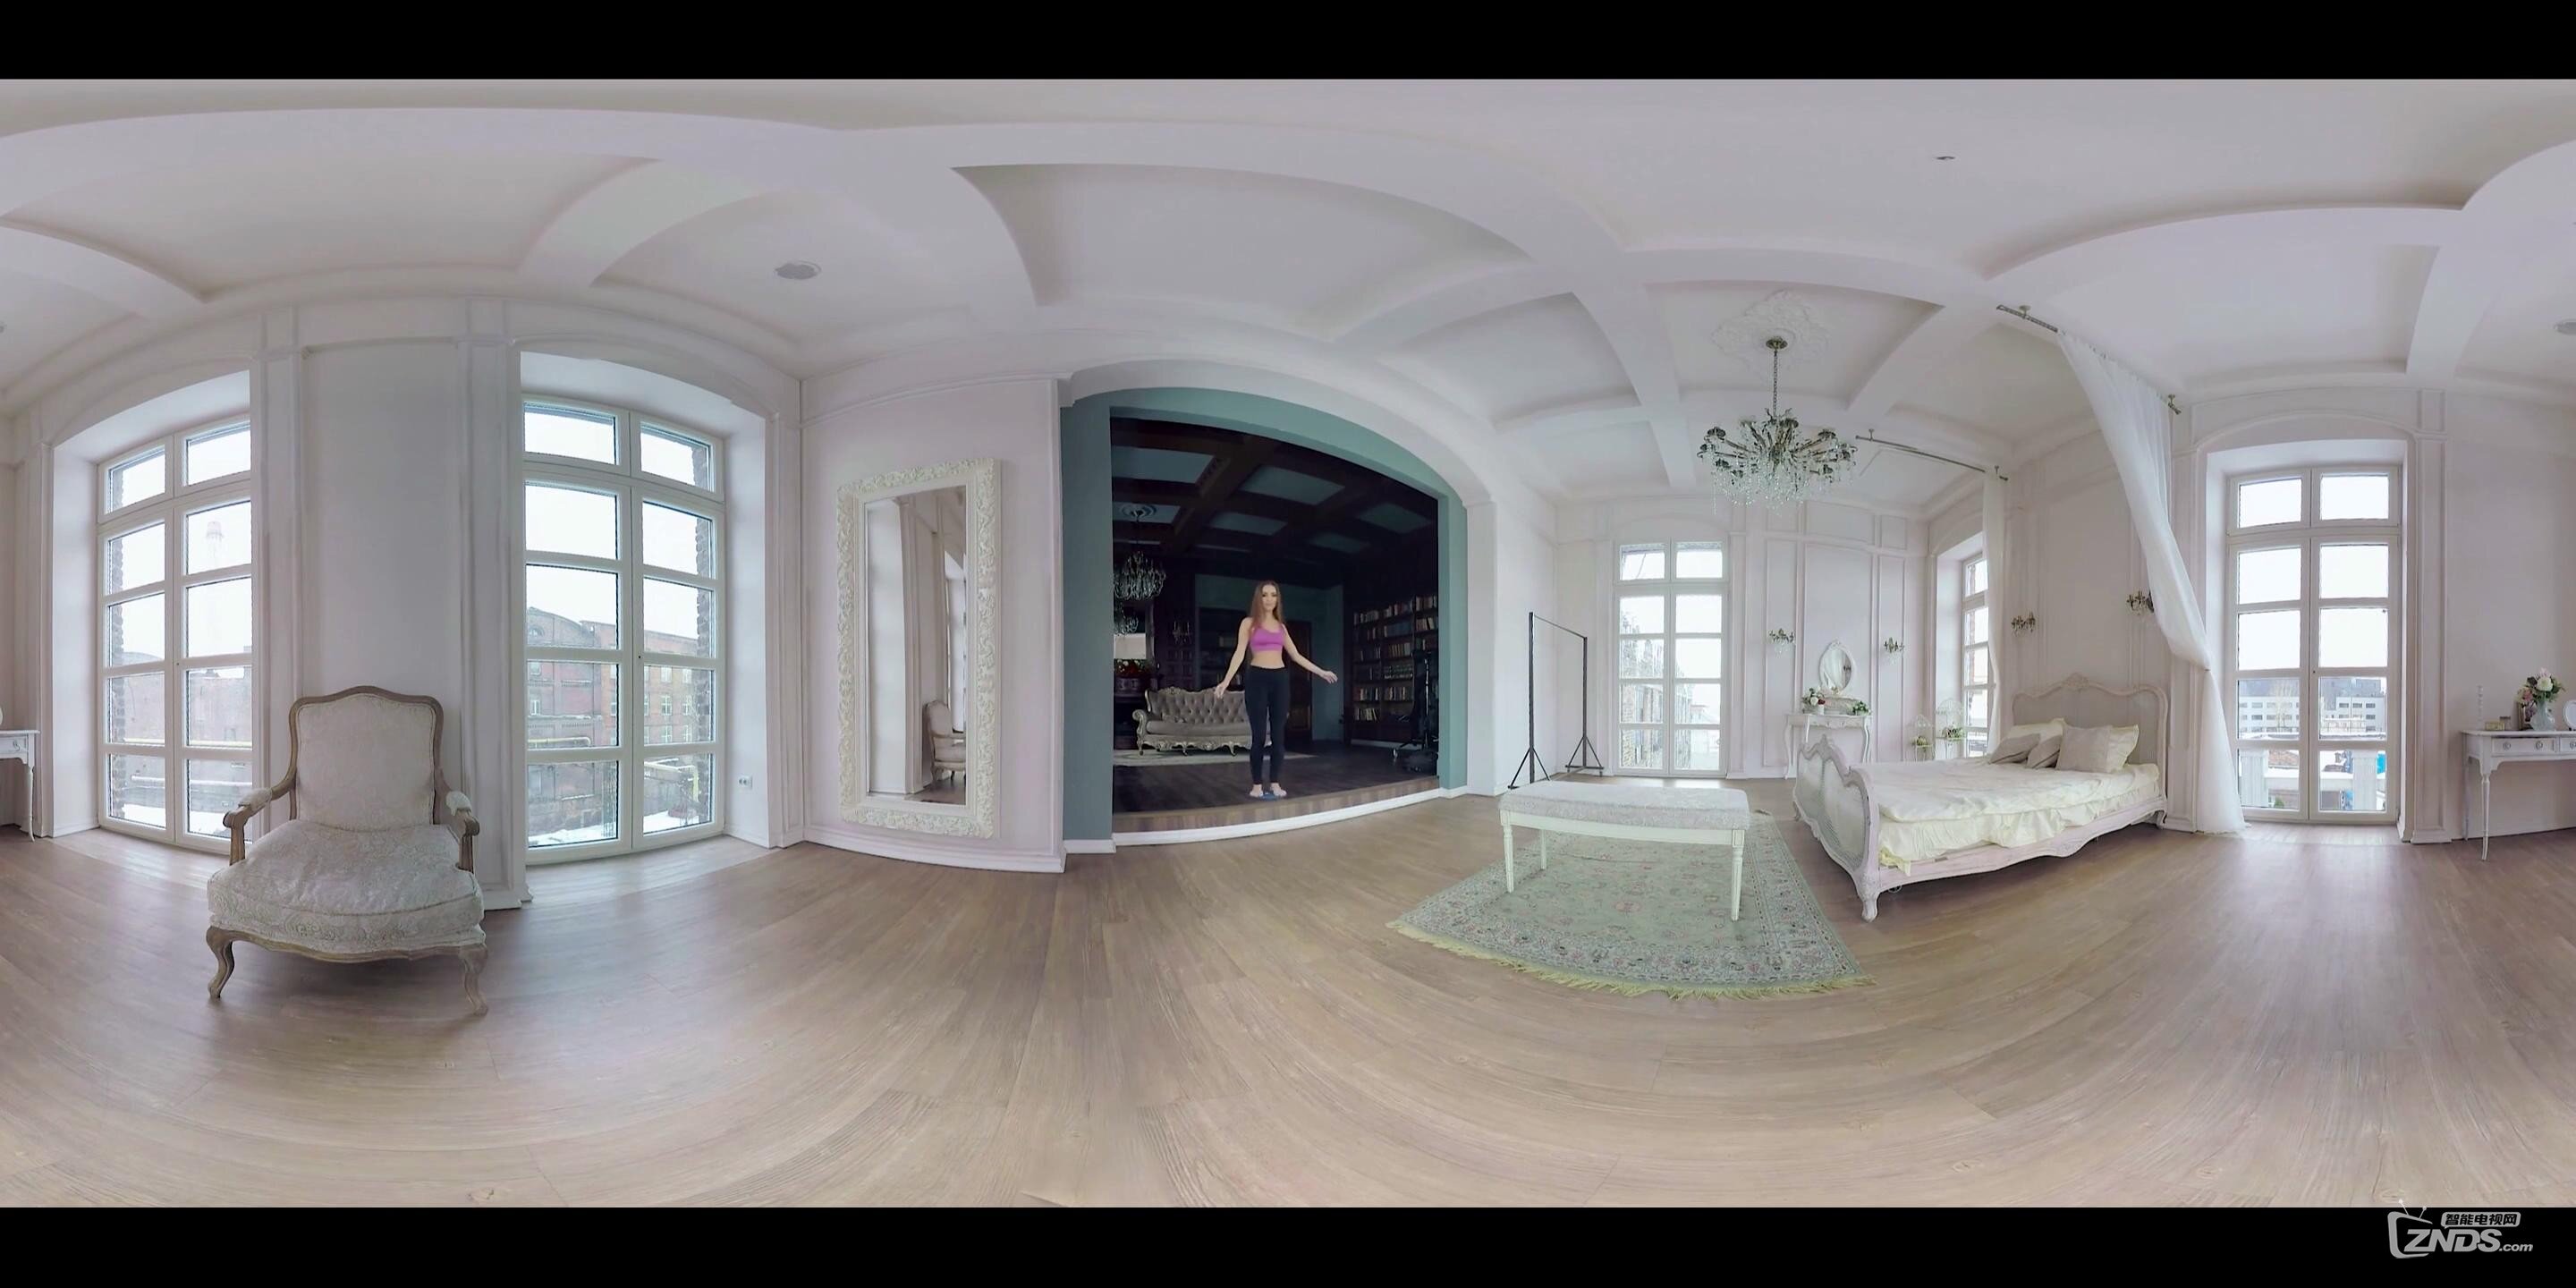 【360度VR全景视频】喜好健身房:美女呼啦圈